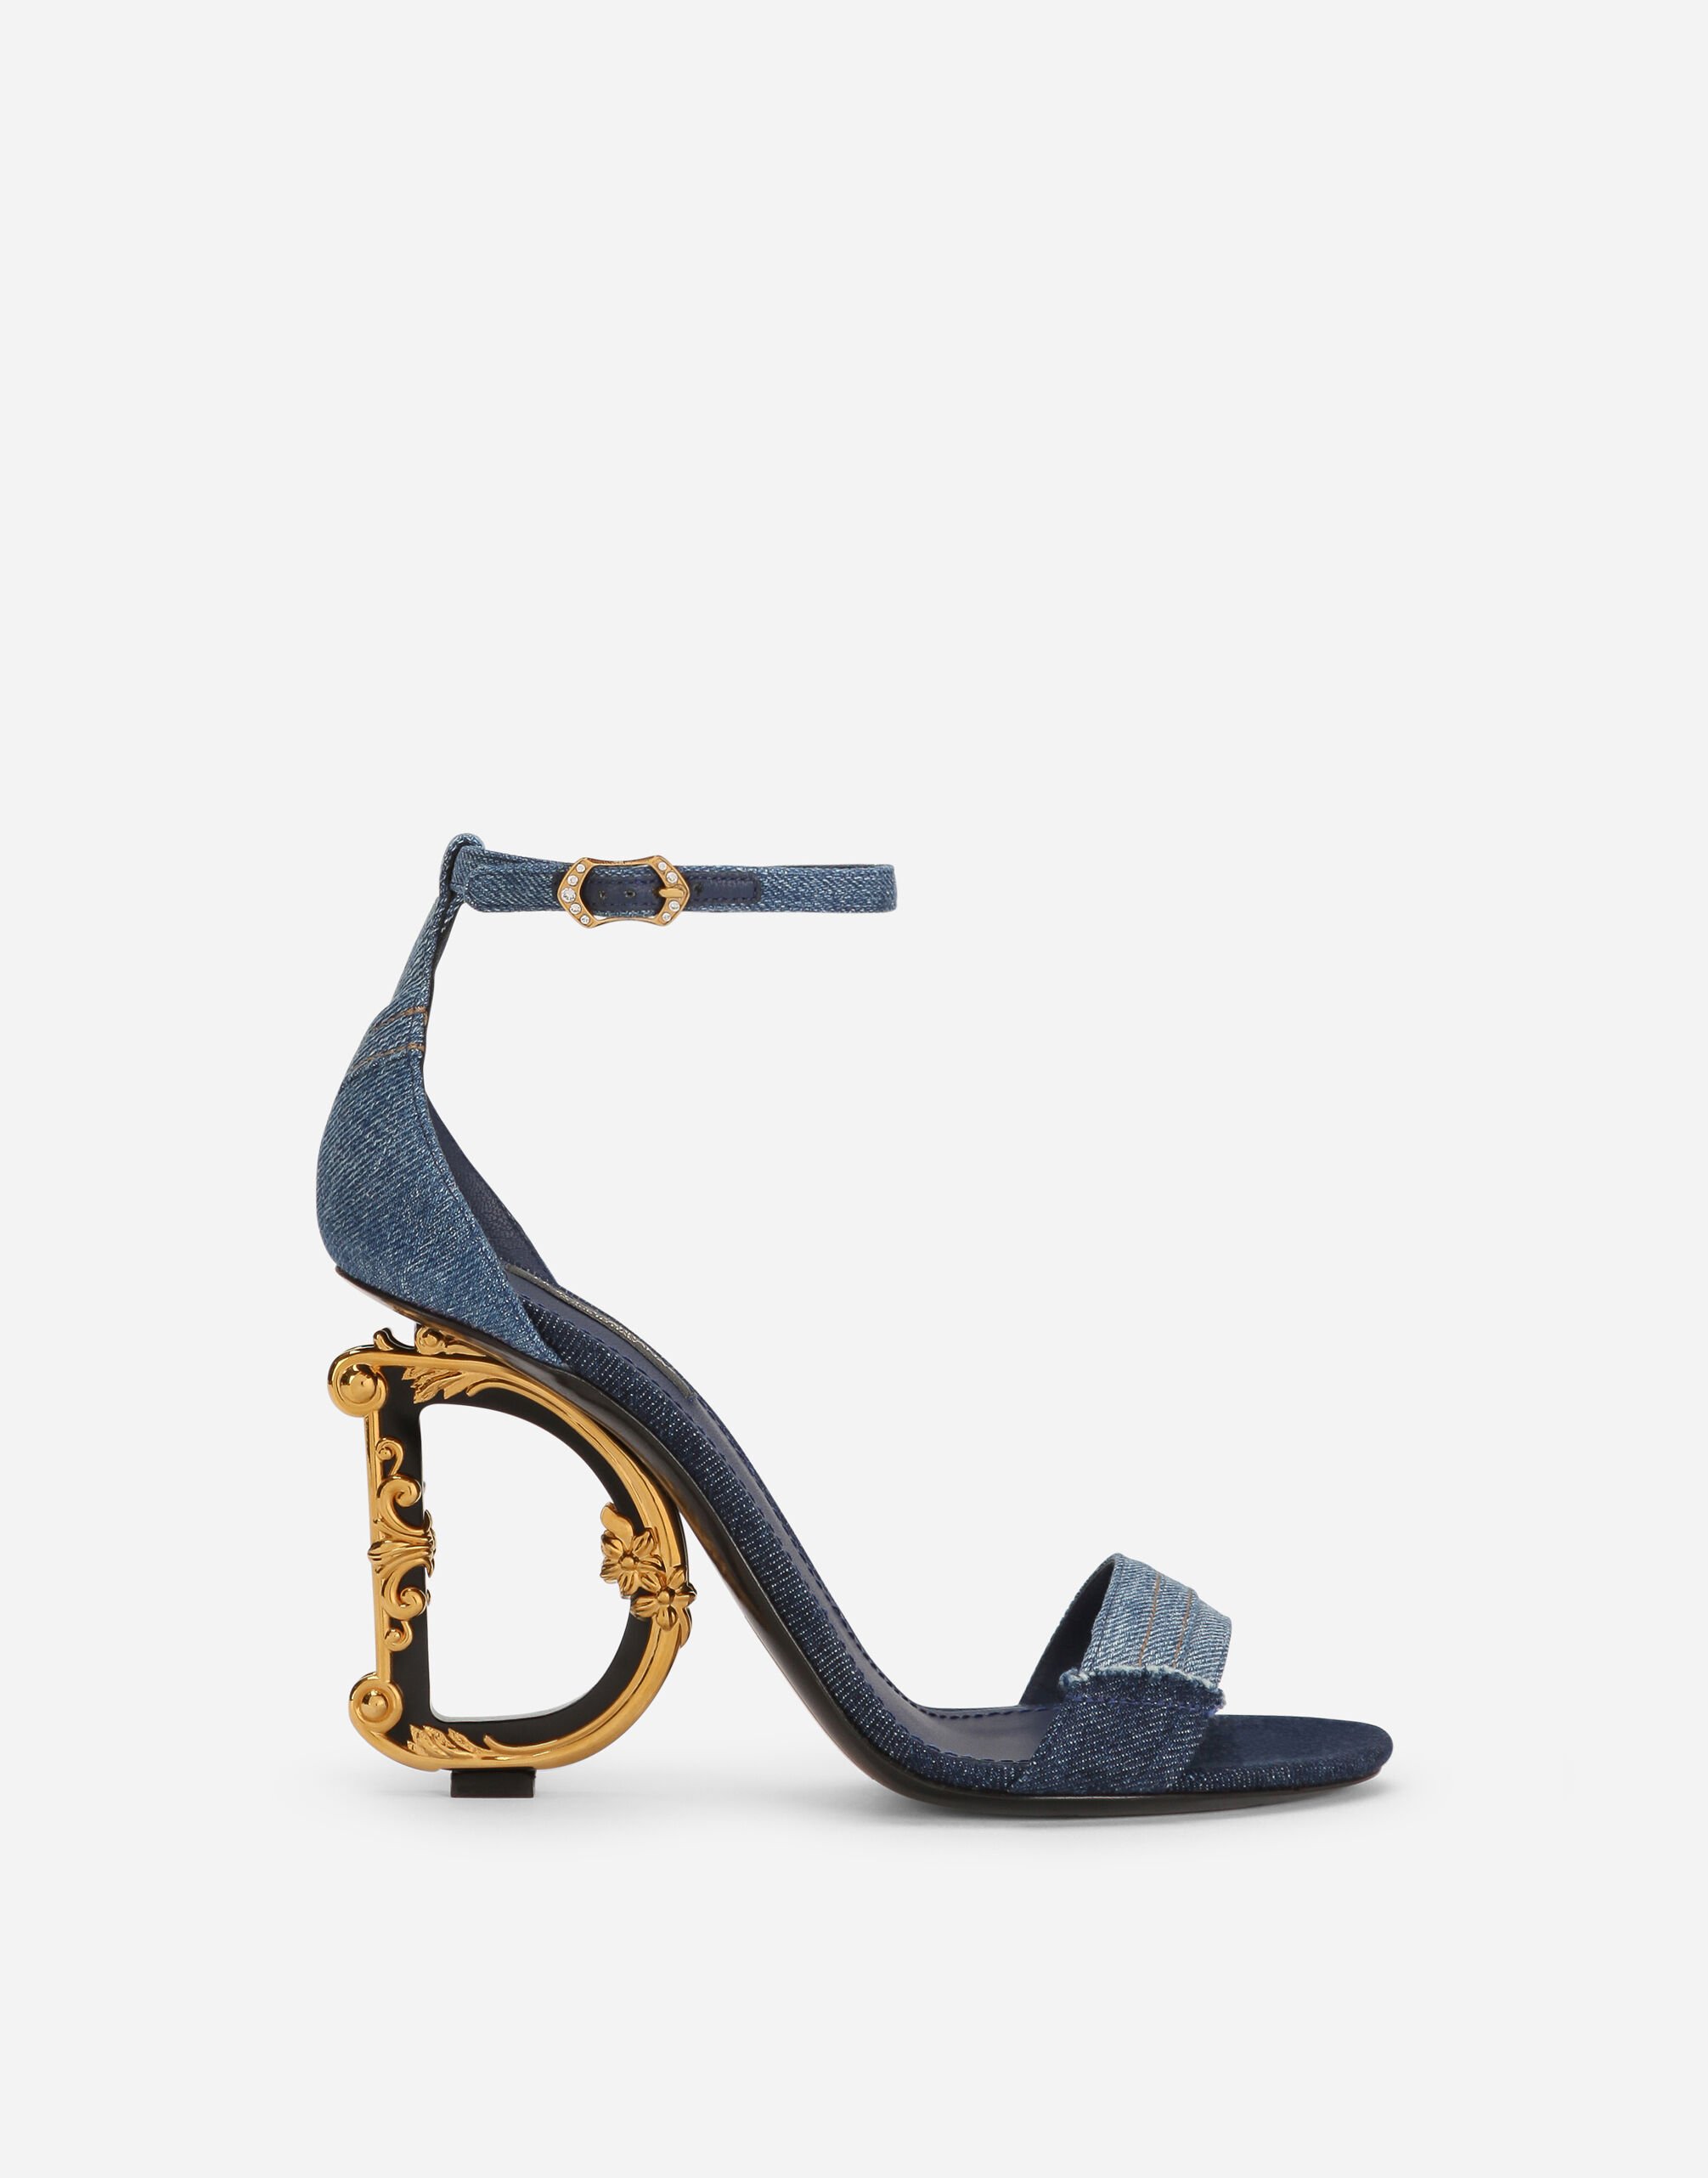 Patchwork denim sandals with baroque DG heel in Denim for 